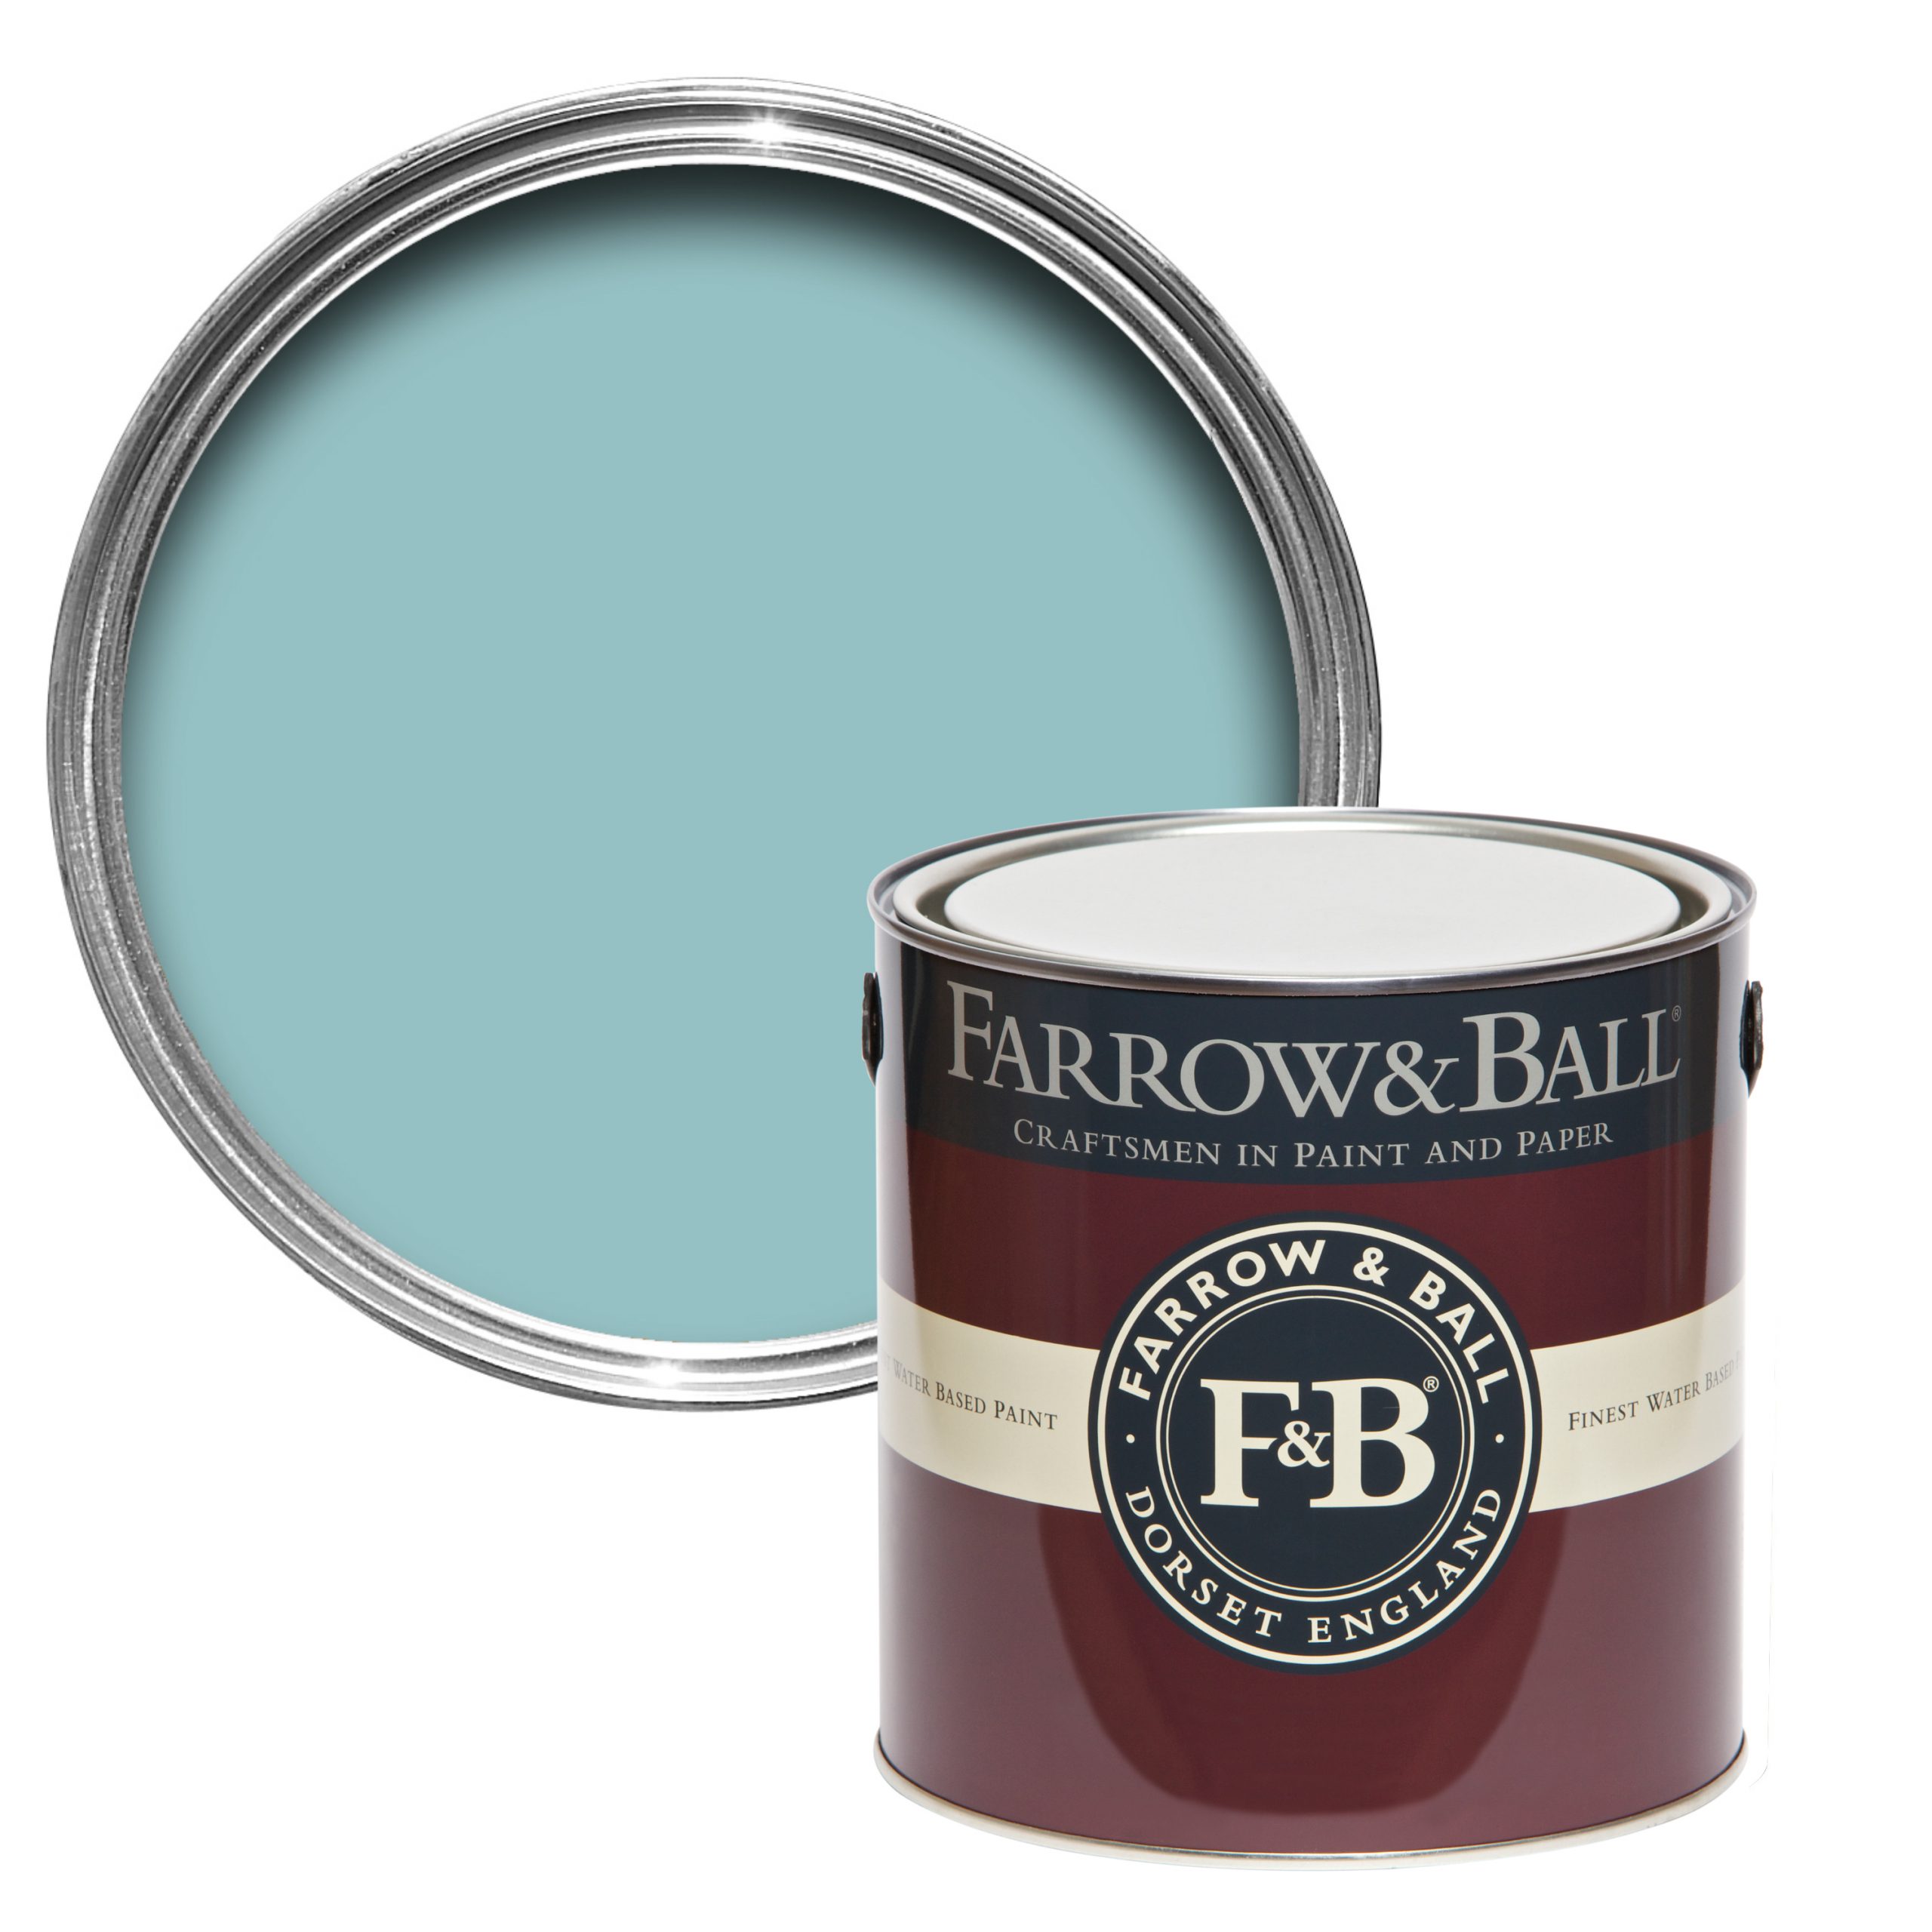 Vopsea albastra lucioasa 95% luciu pentru interior exterior Farrow & Ball Full Gloss Blue Ground No. 210 750 ml